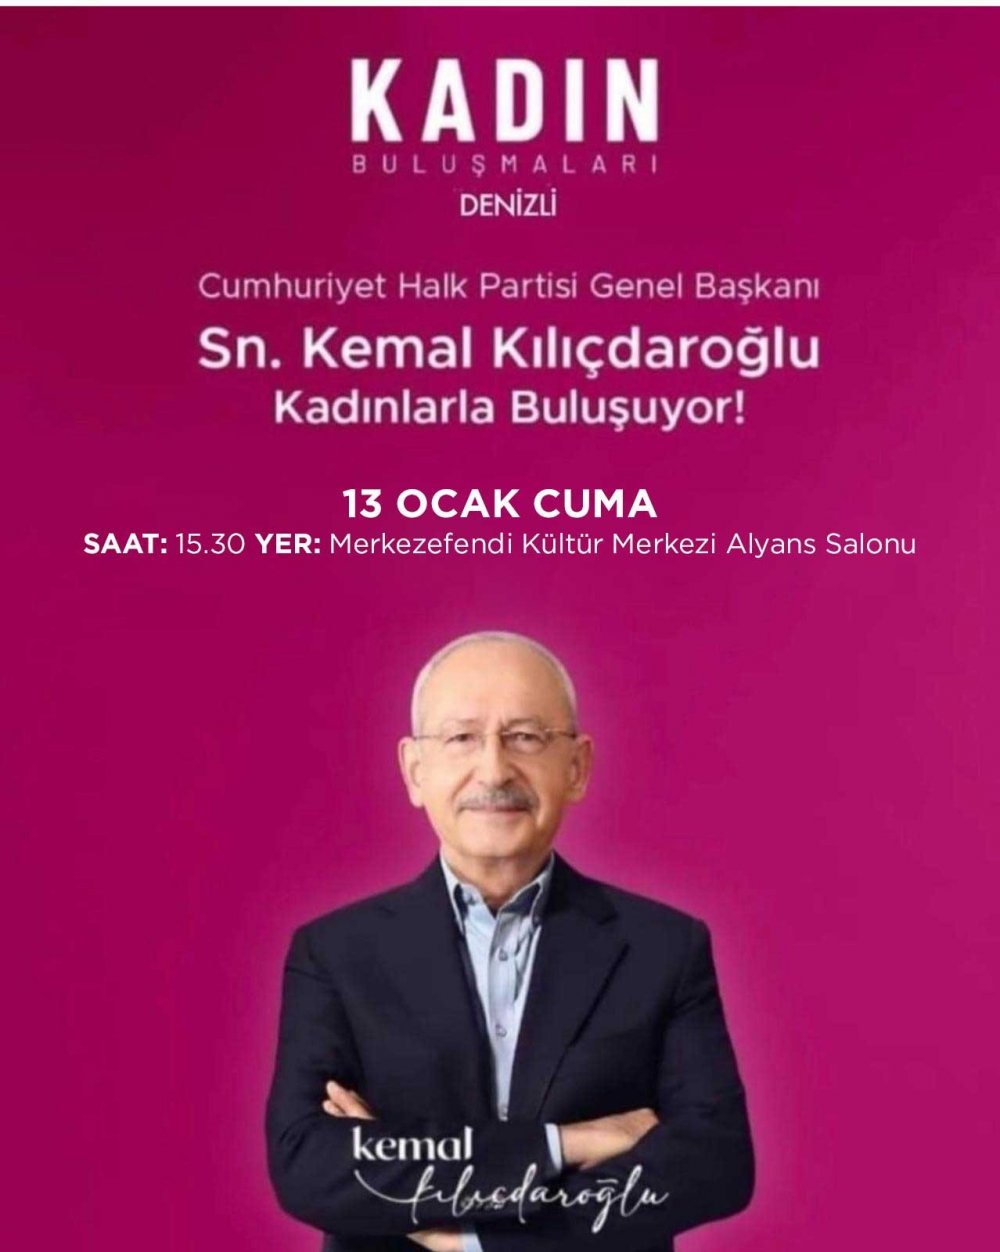 Cumhuriyet Halk Partisi Genel Başkanı Kemal Kılıçdaroğlu'nun 12 Ocak Perşembe günü gerçekleştireceği ‘Toplu Açılış’ töreni, dayısı Ali Gündüz’ün vefatından dolayı 13 Ocak Cuma gününe ertelendi.